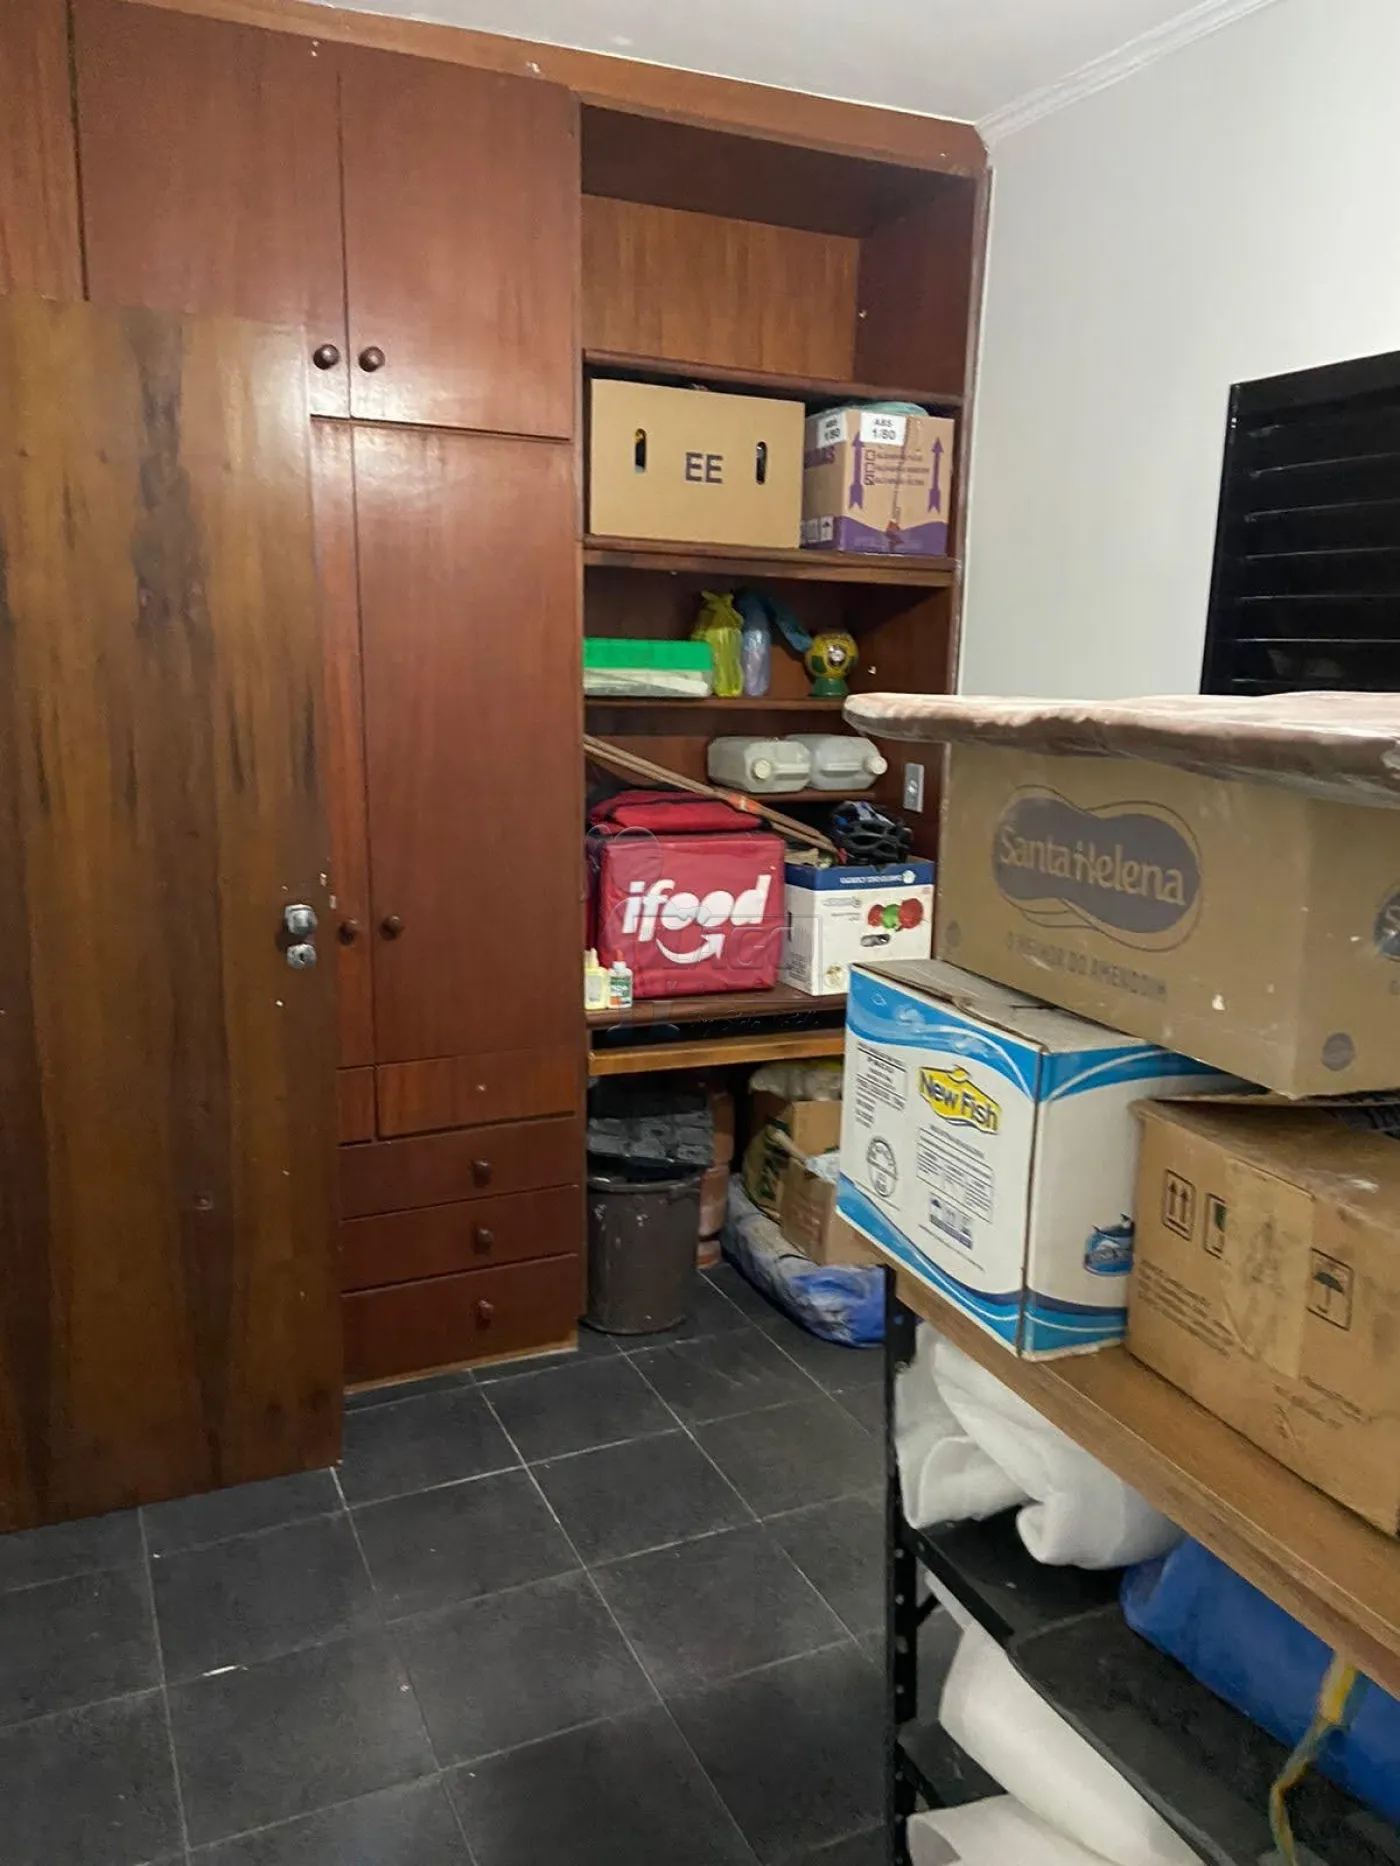 Comprar Casas / Padrão em Ribeirão Preto R$ 235.000,00 - Foto 7